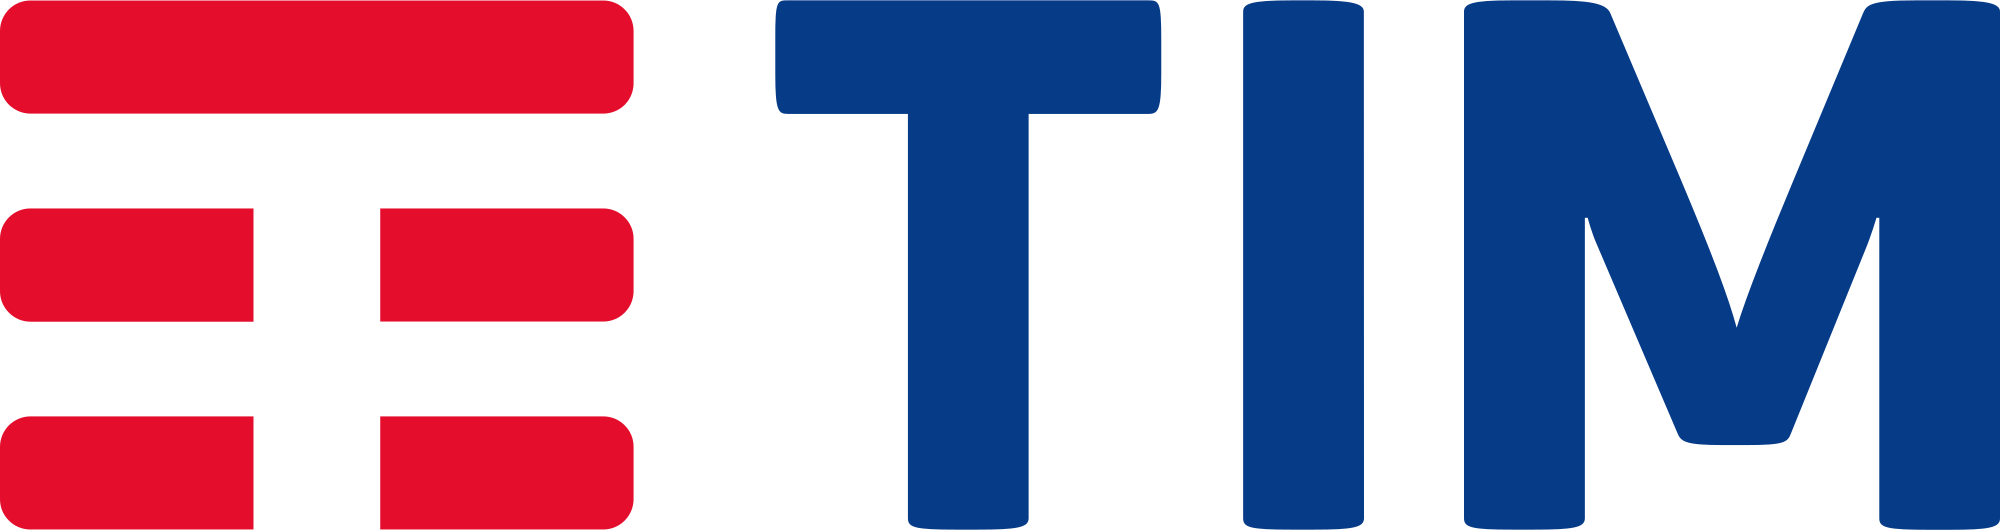 Telecom Italia Brand Logo